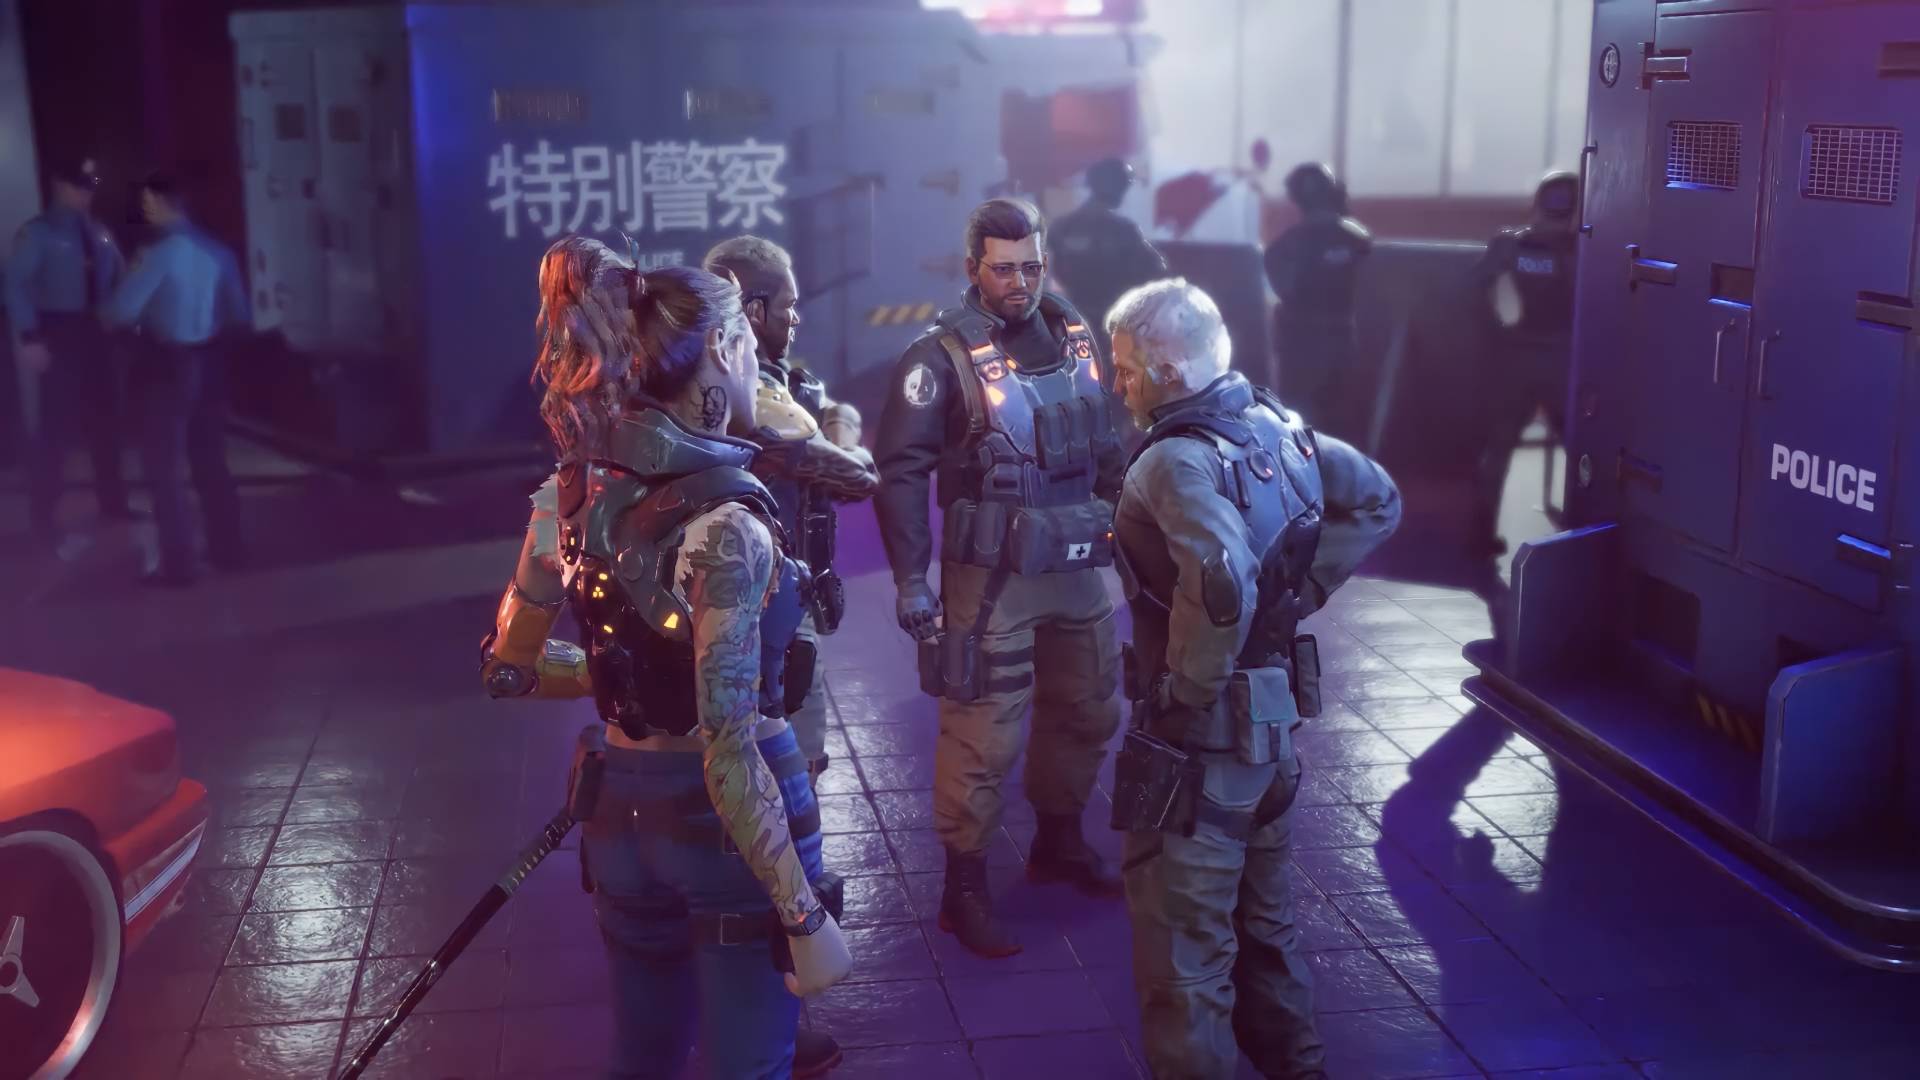 Un grupo de mercenarios cyberpunk bajo la lluvia en una zona industrial con caracteres chinos en las paredes.